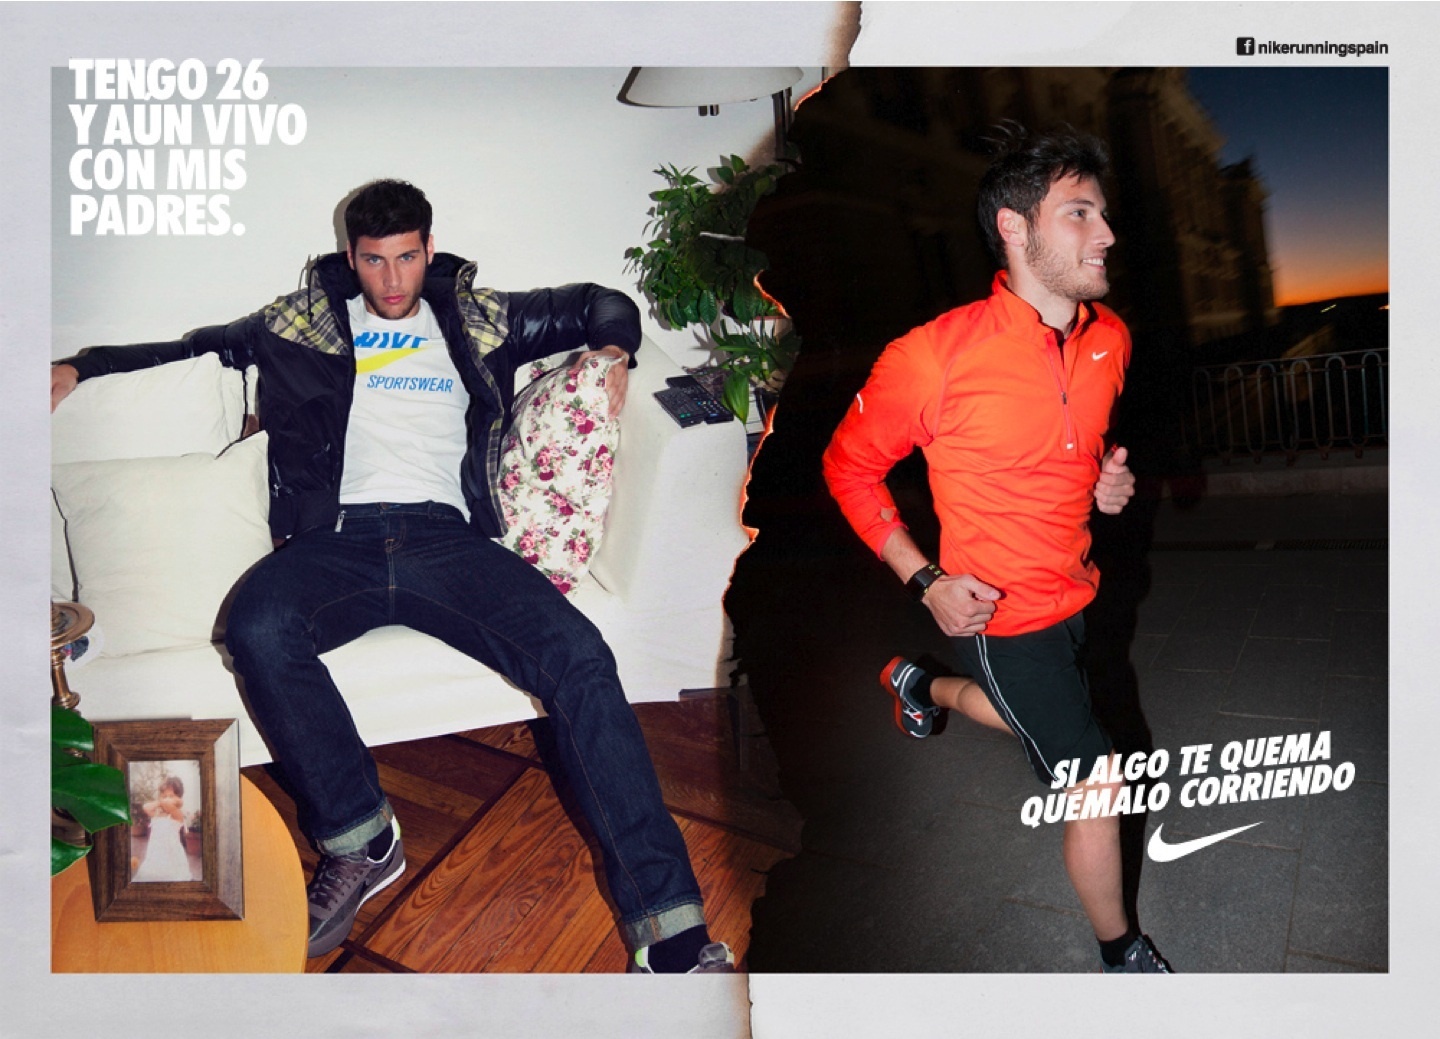 Nike lanza la campaña »Si algo te quema, quémalo corriendo» para que los madrileños se dediquen al »running»